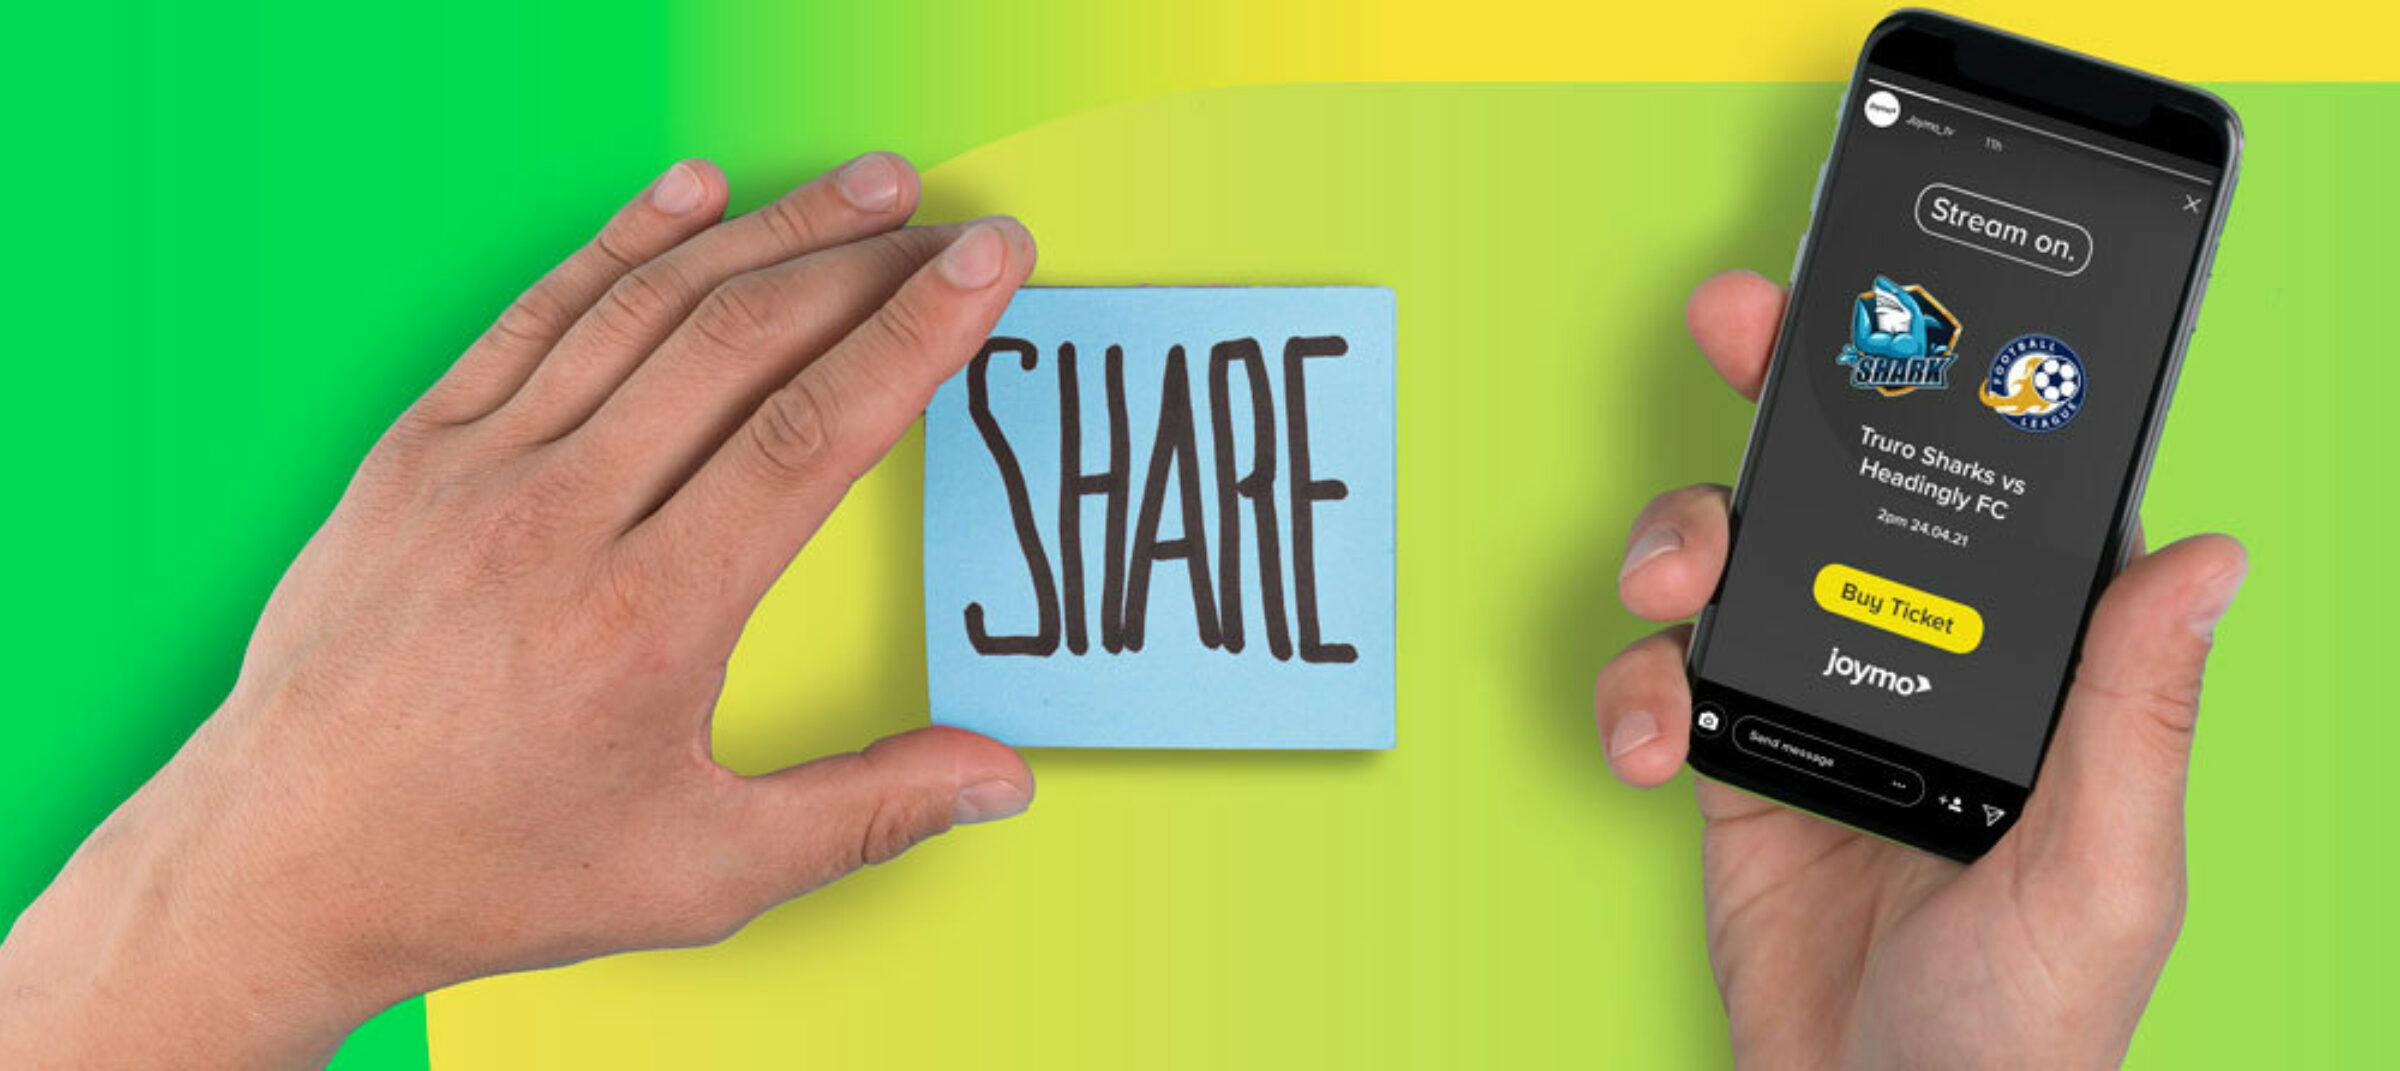 Share match social